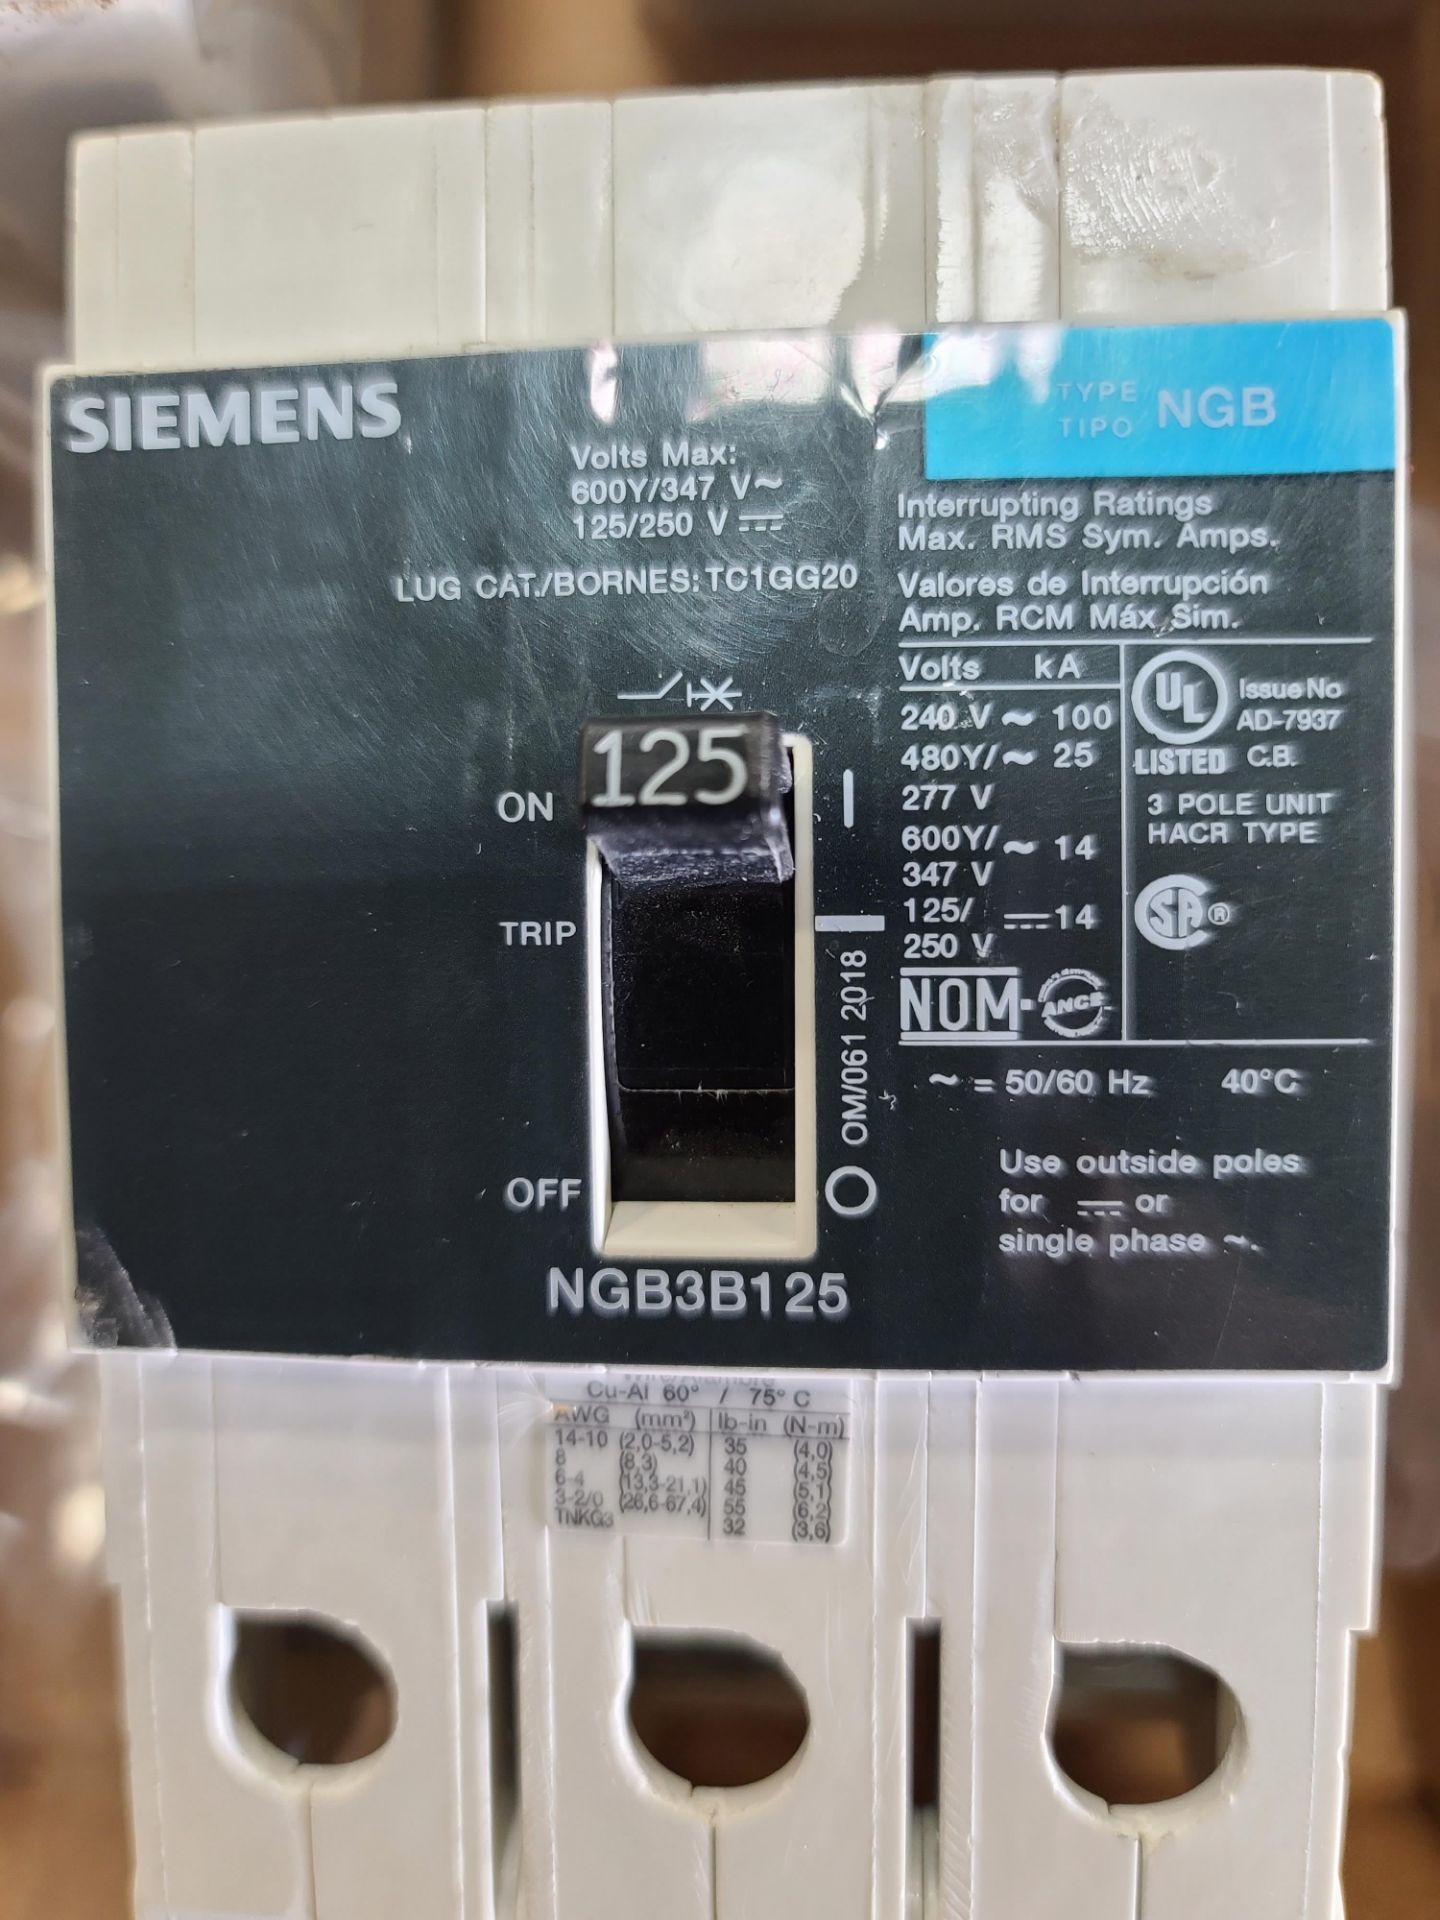 Siemens Type NGB "U" - Image 2 of 2